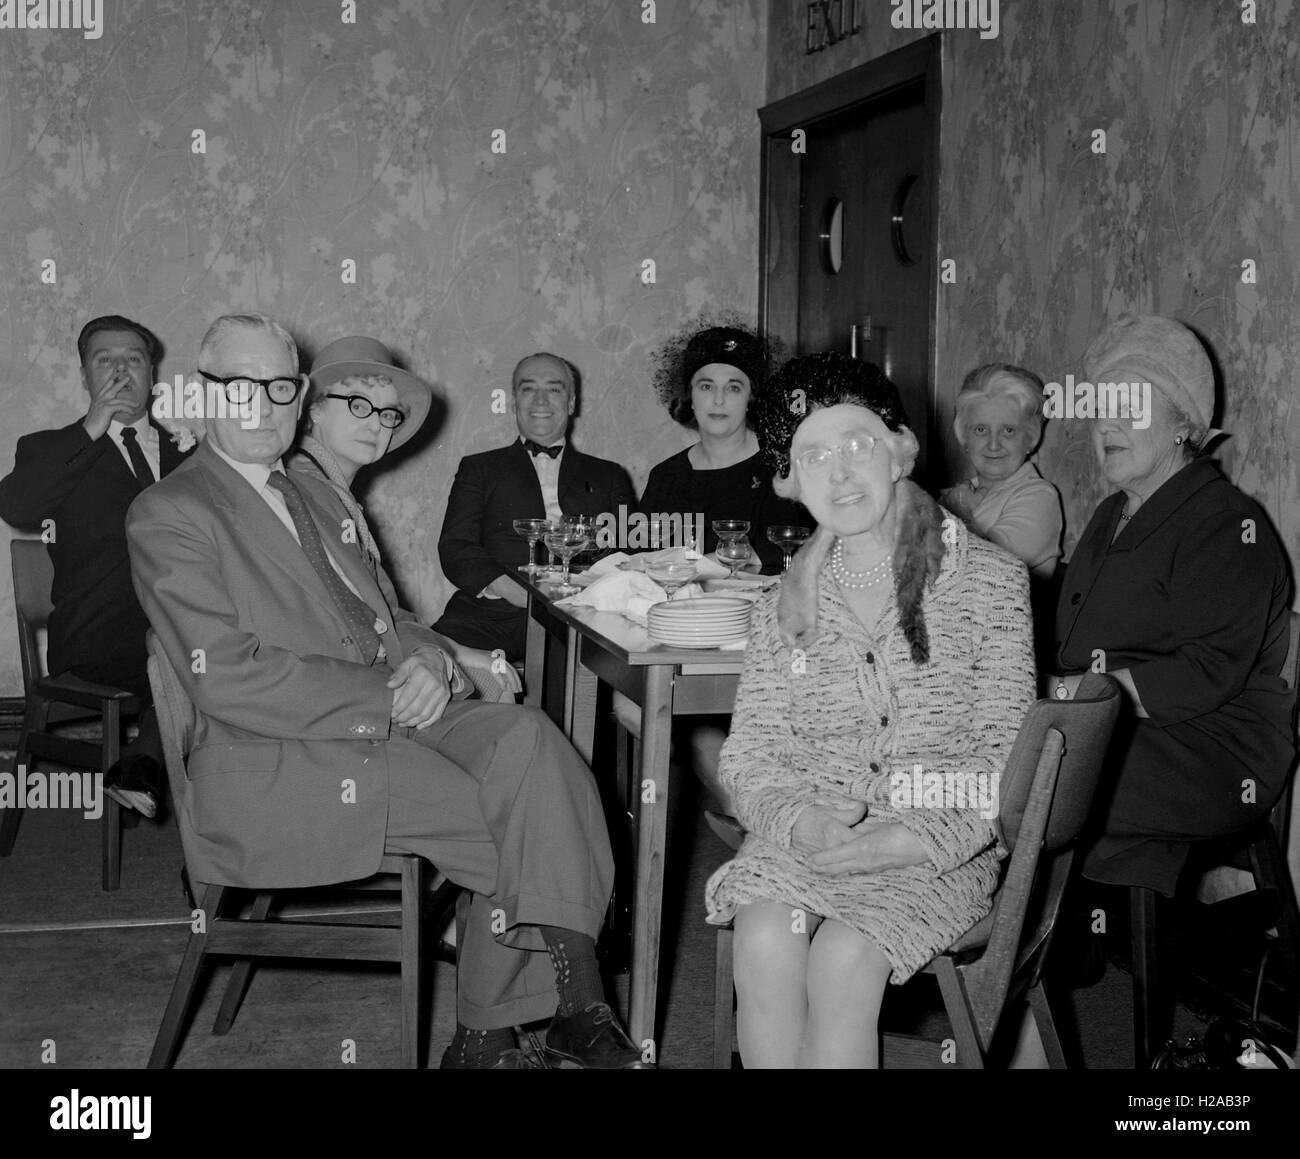 Giorno di nozze, presso la reception. Storia sociale, Inghilterra c1960. Foto di Tony Henshaw Foto Stock